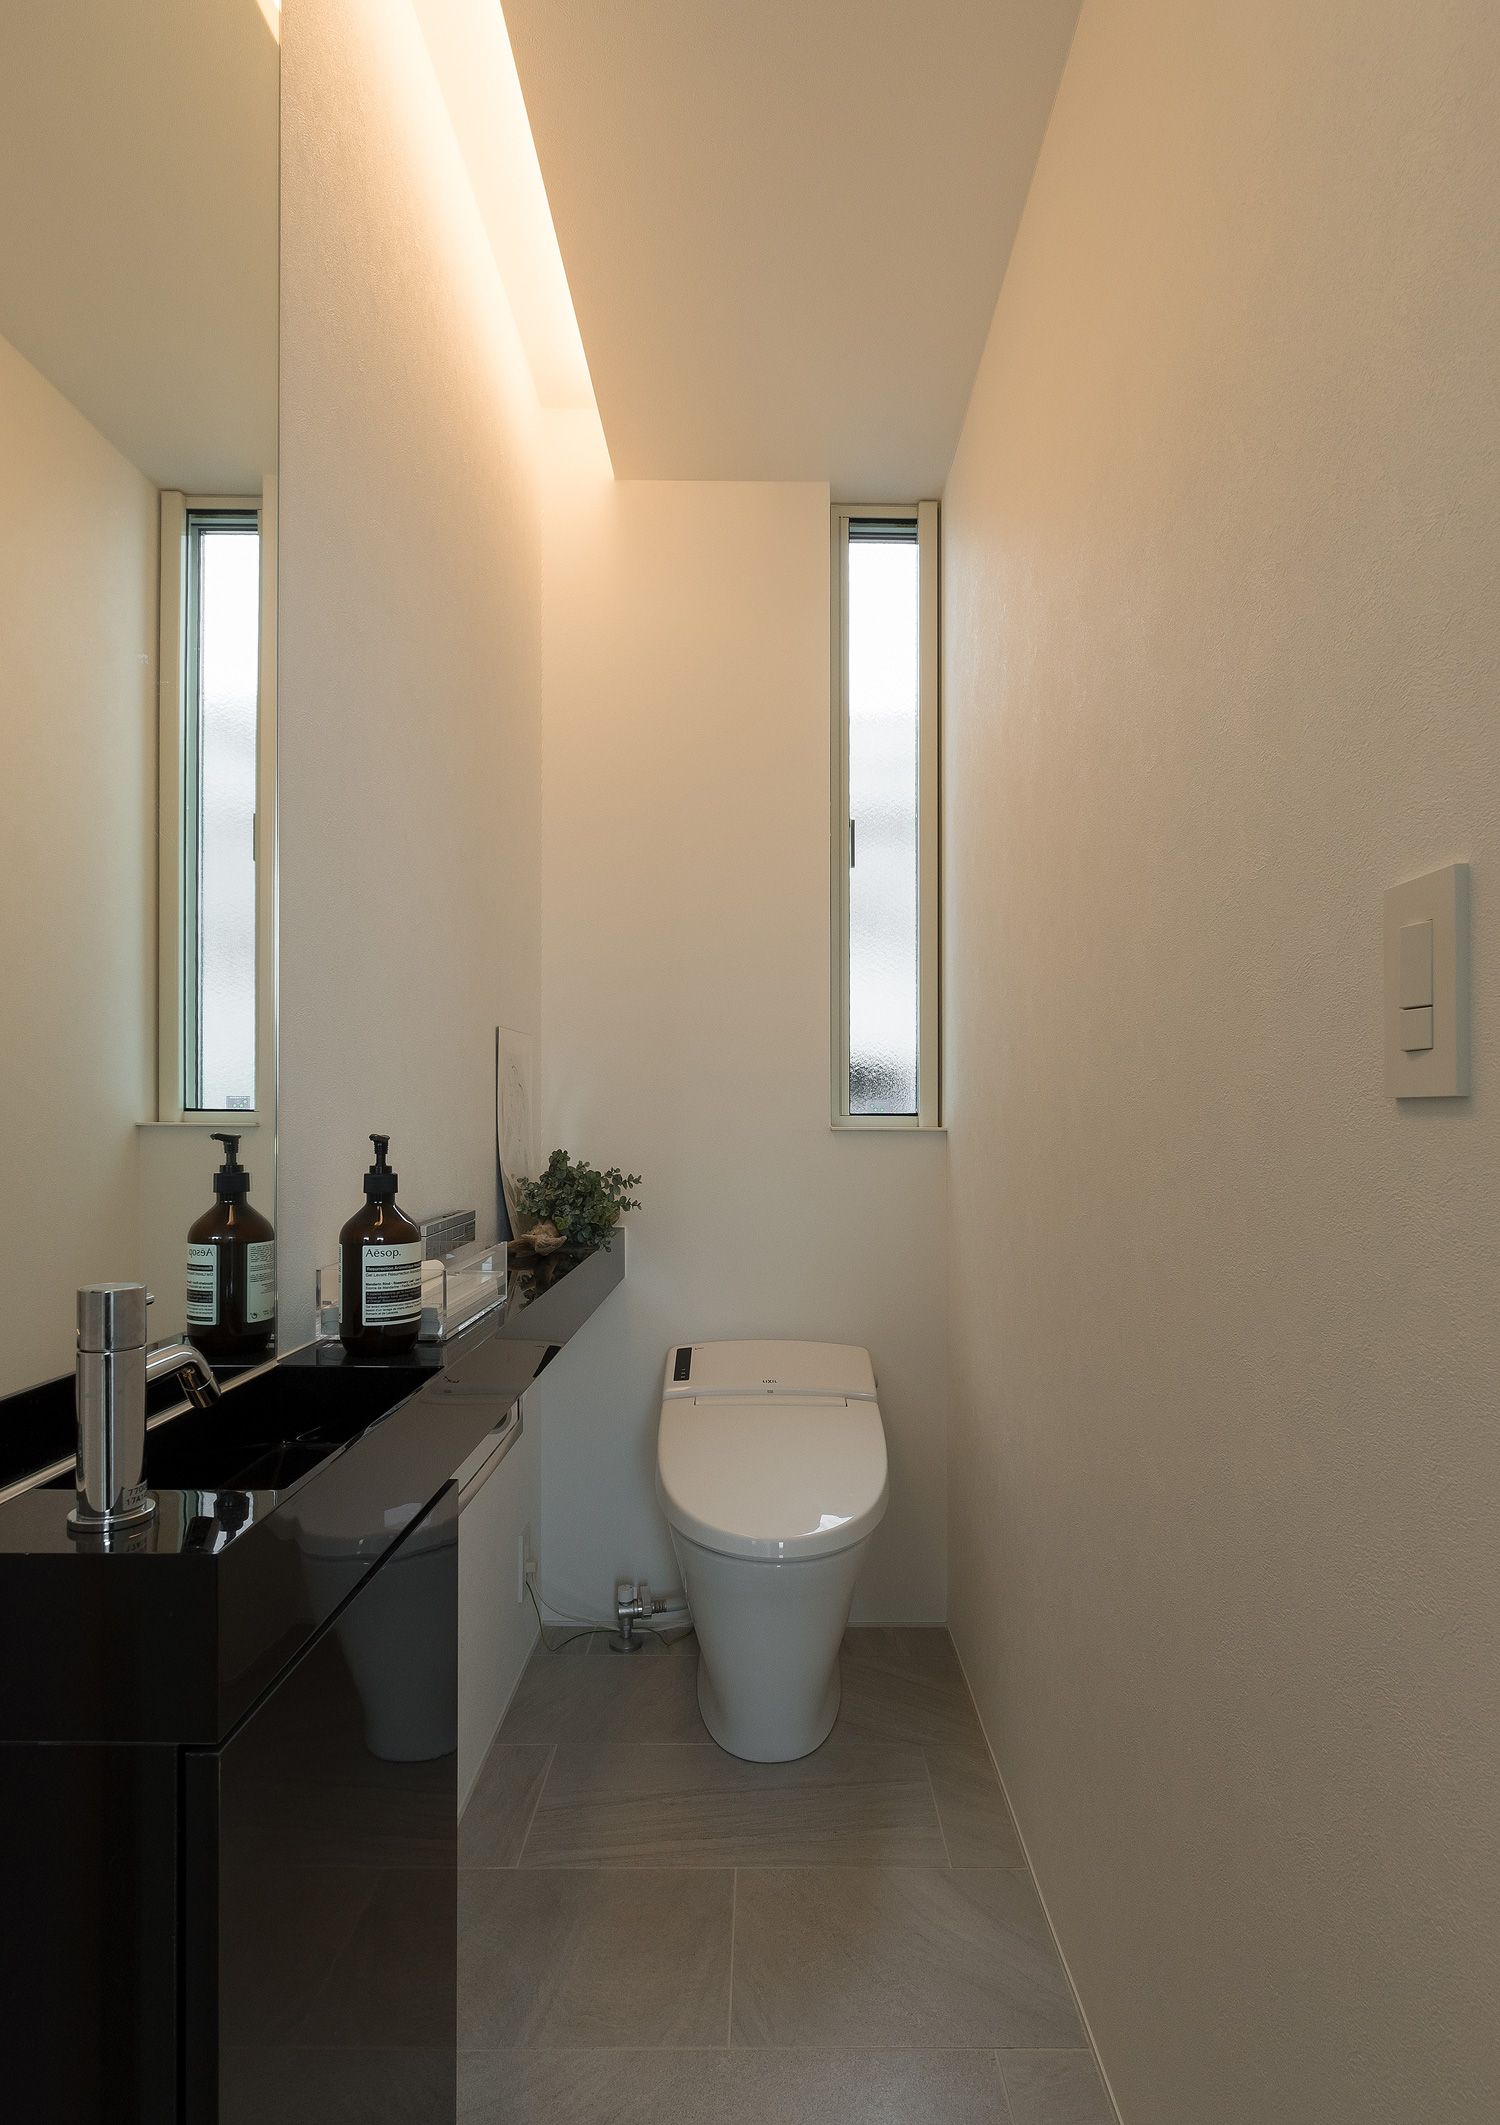 壁際に間接照明を取り付けた黒い薄型手洗いのあるトイレ・デザイン住宅